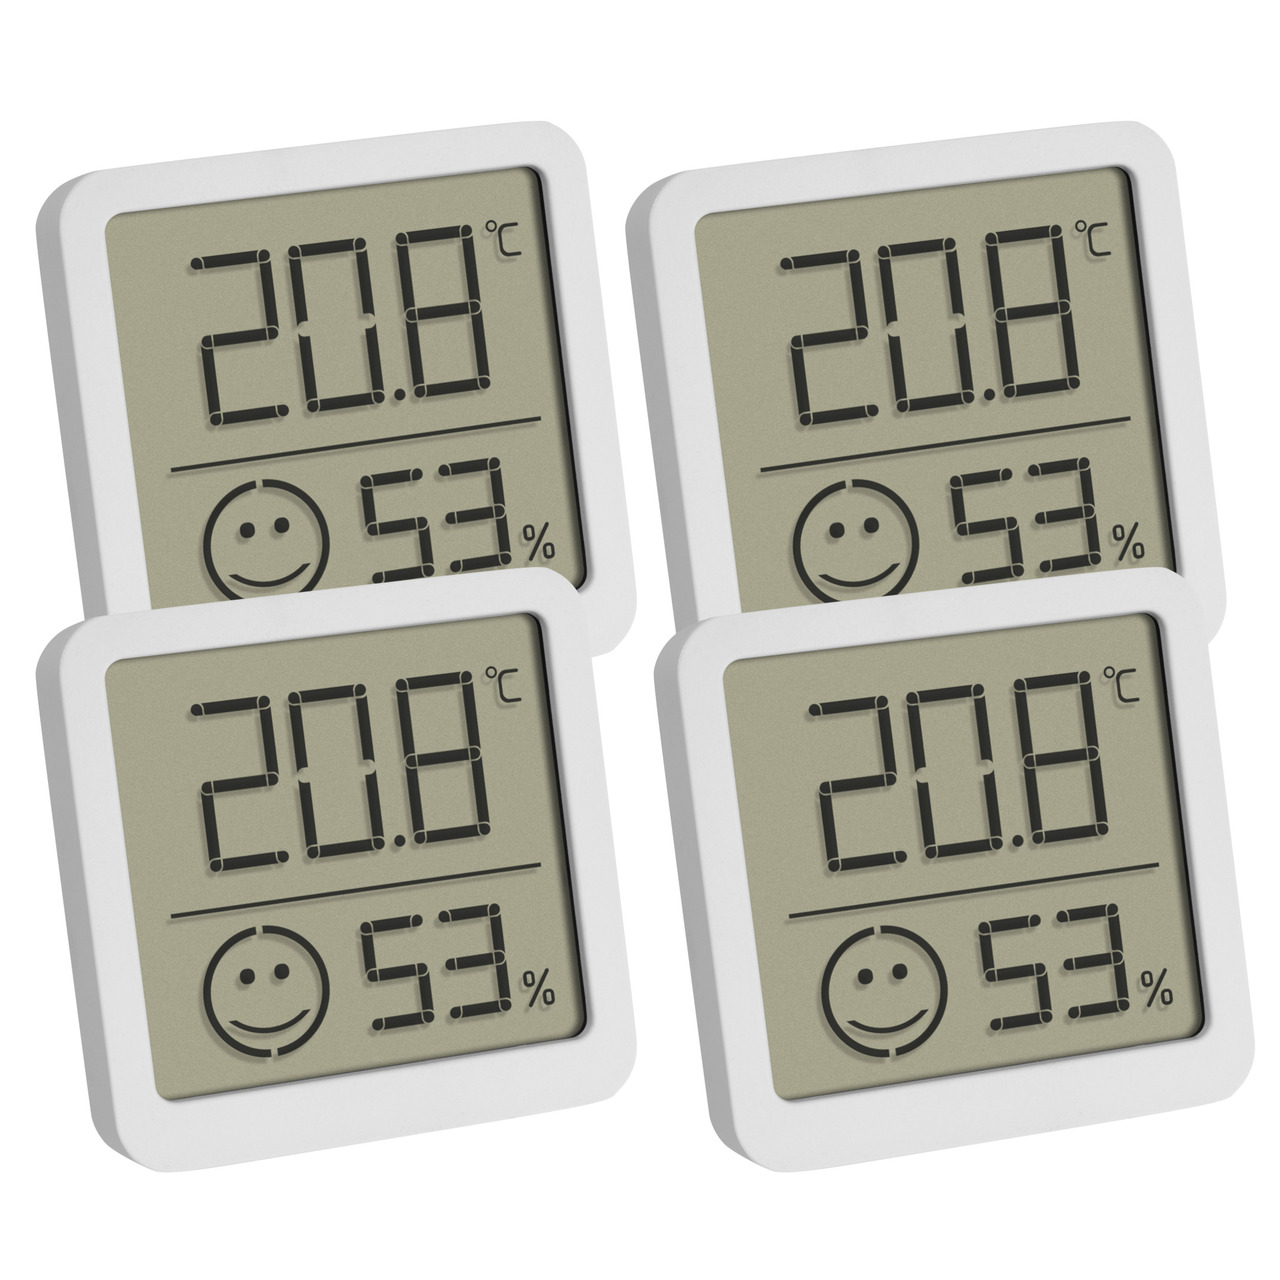 TFA 4er-Set Thermo-Hygrometer mit Smiley-Klimakomfortanzeige- Raumtemperatur- Luftfeuchte- weiss unter Klima - Wetter - Umwelt